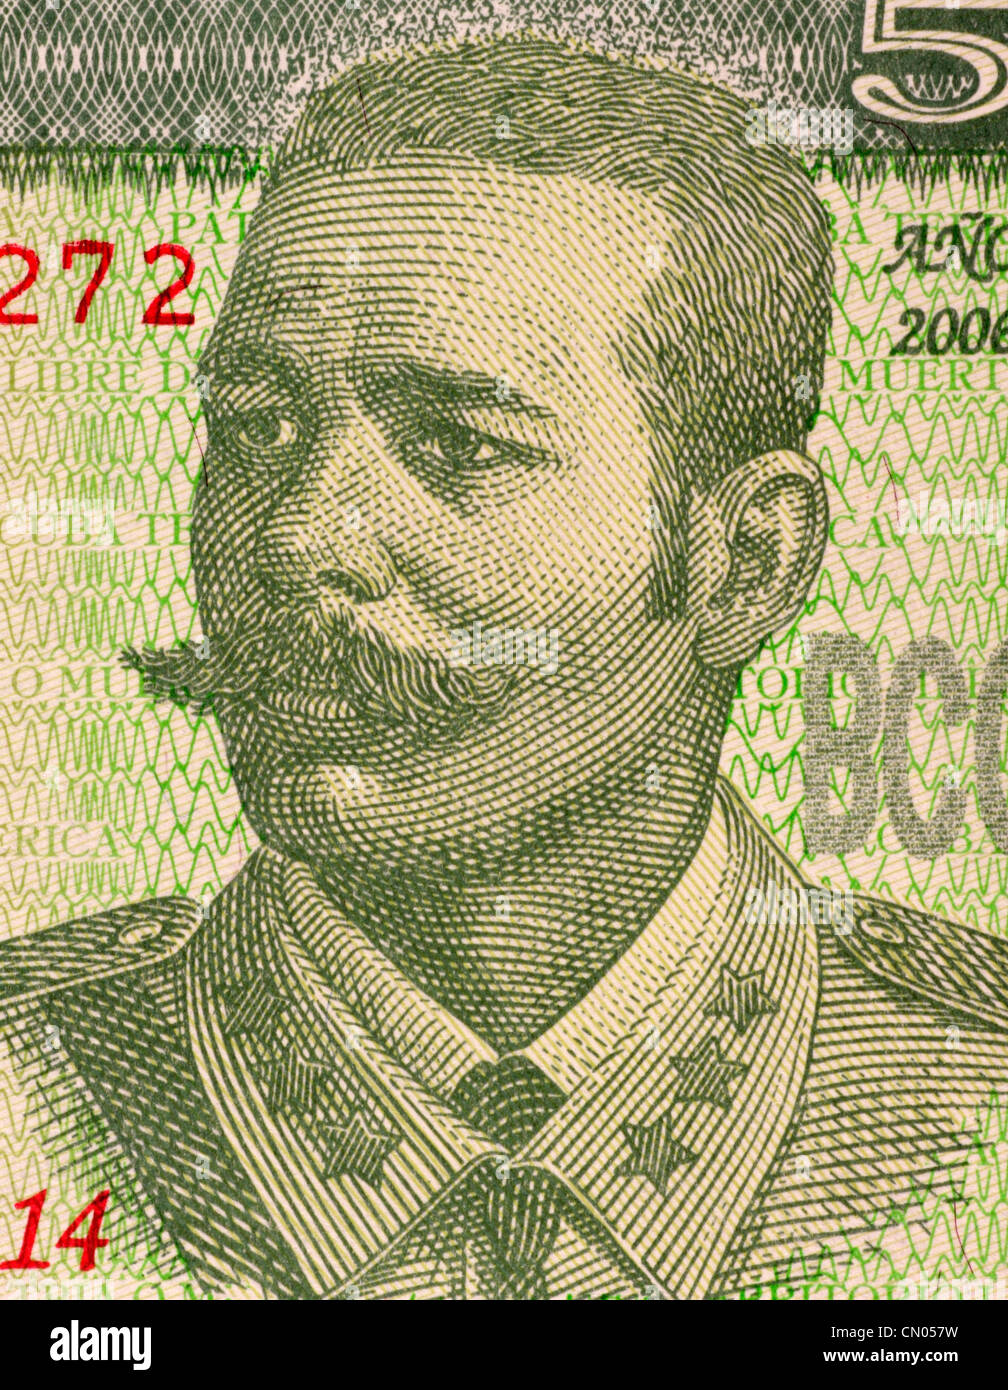 Antonio Maceo Grajales (1845-1896) su 5 pesos 2006 banconota da Cuba. Secondo il comando dell'esercito Cubano di indipendenza. Foto Stock